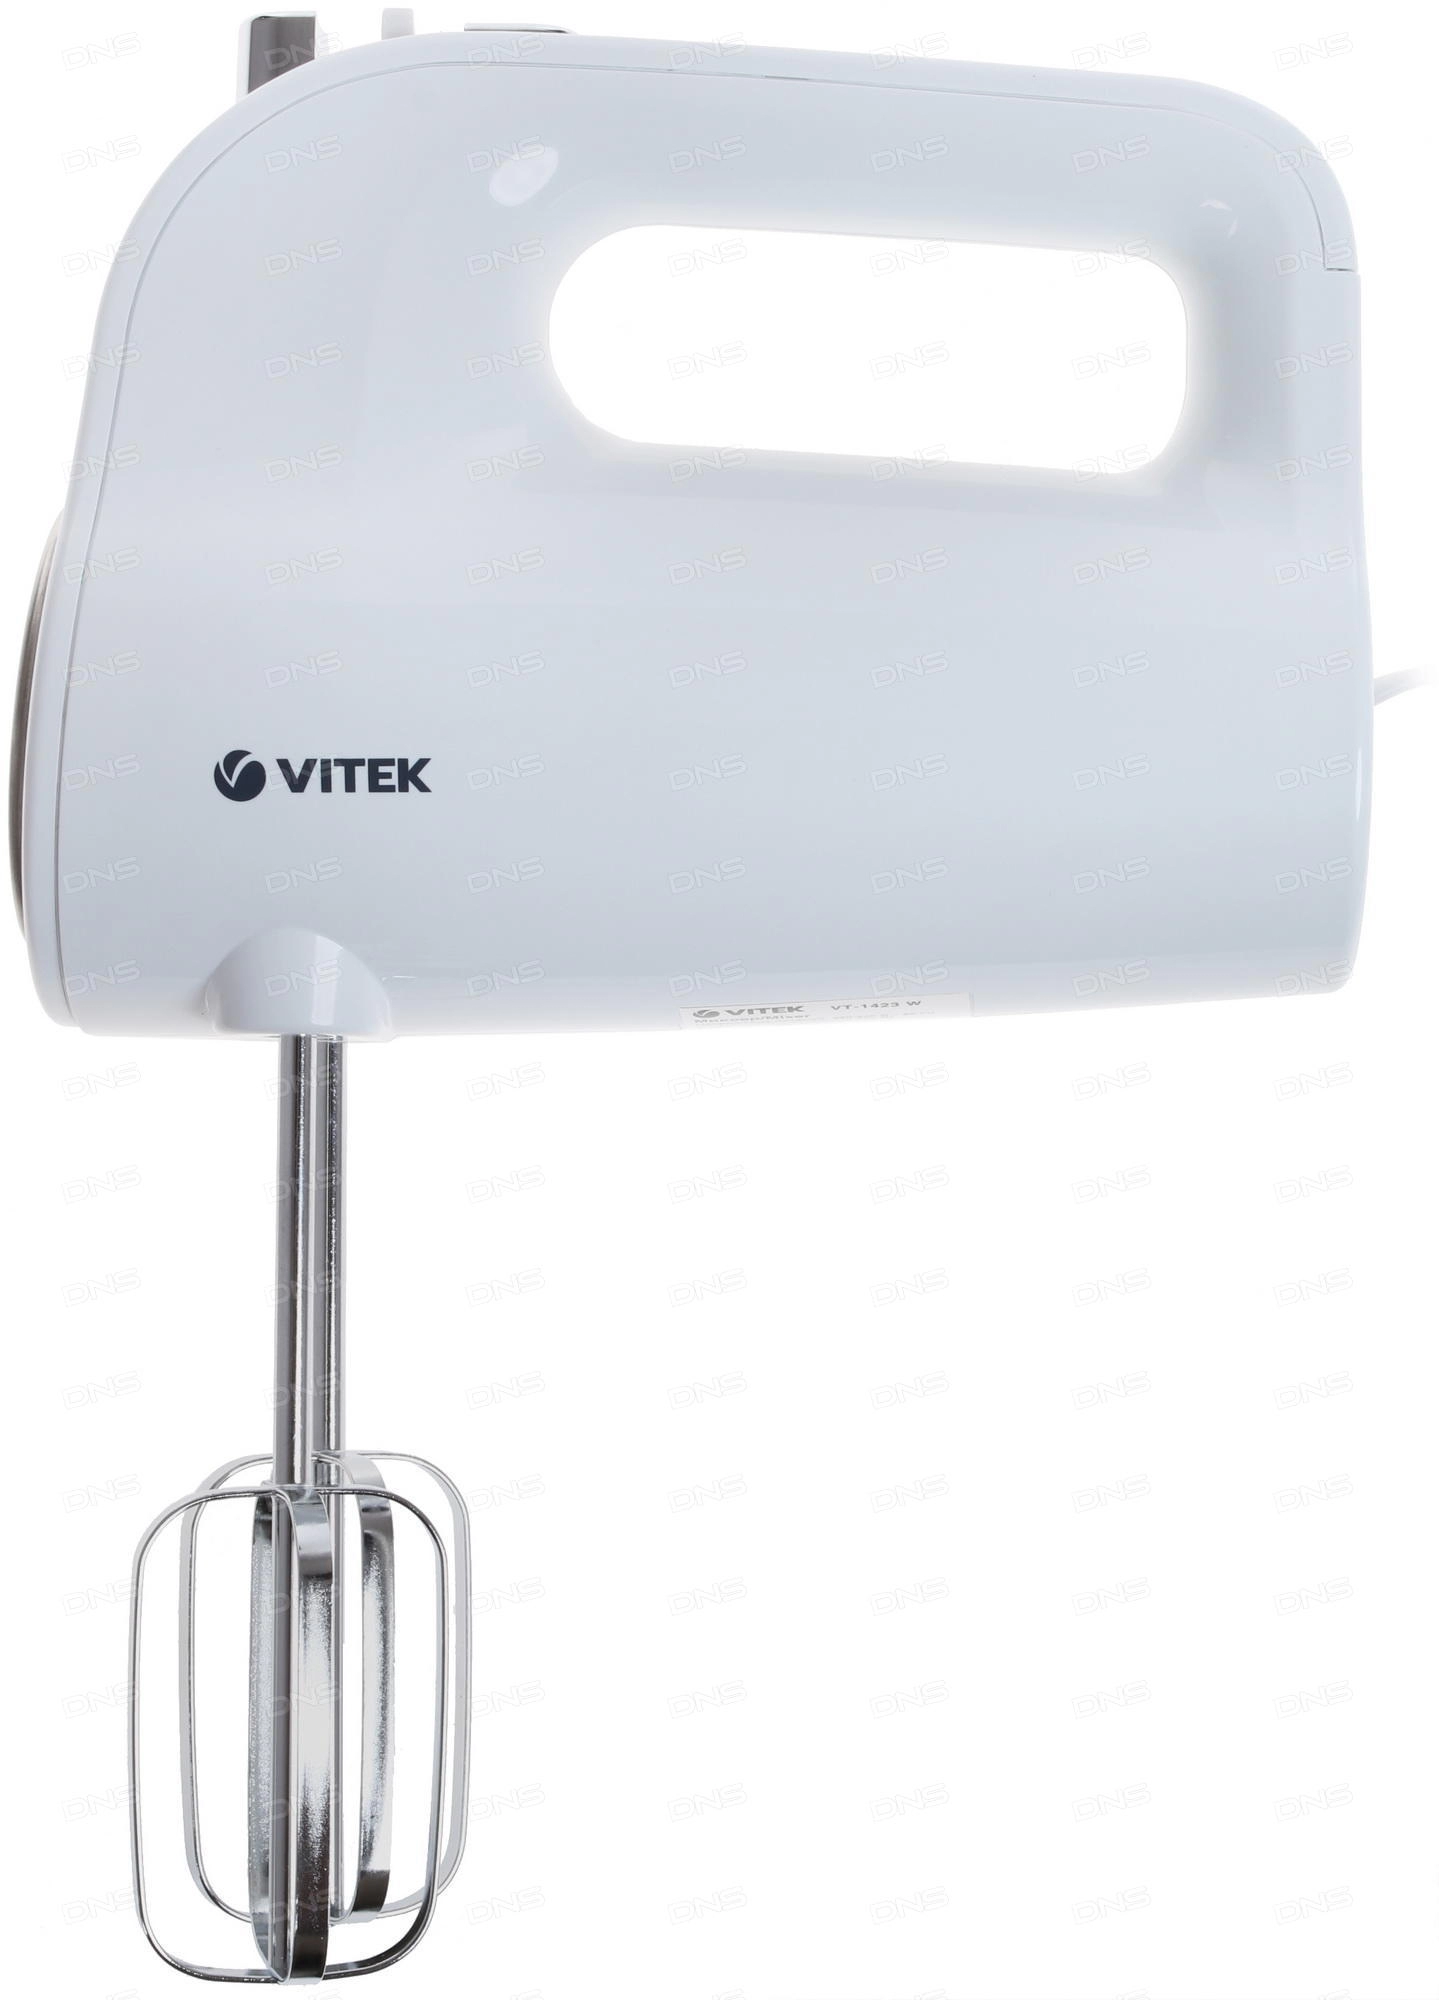 Миксер Vitek VT-1423, 600 Вт, 5 скоростей, Белый